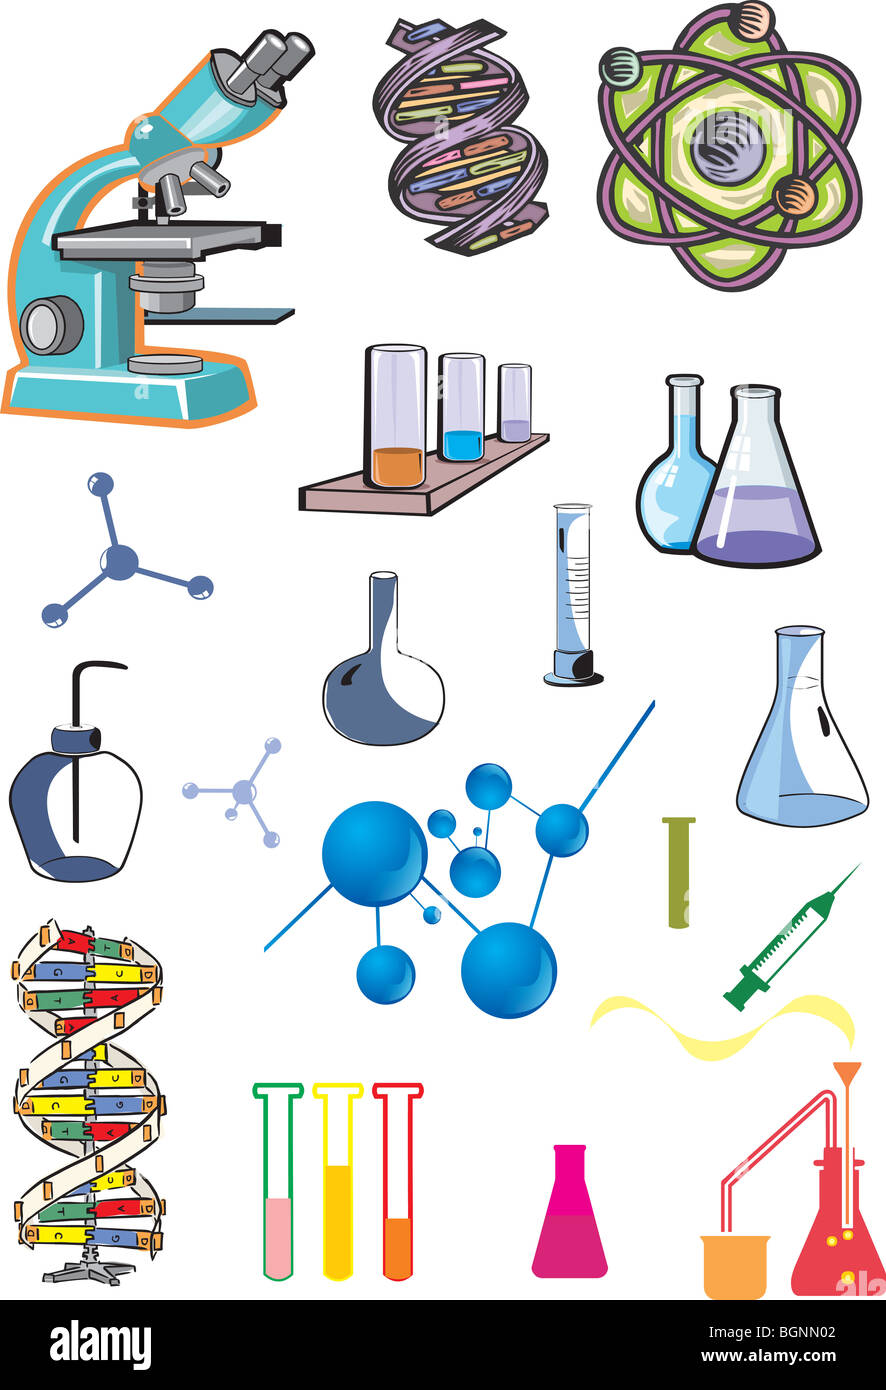 La science, collection d'équipements de laboratoire Banque D'Images